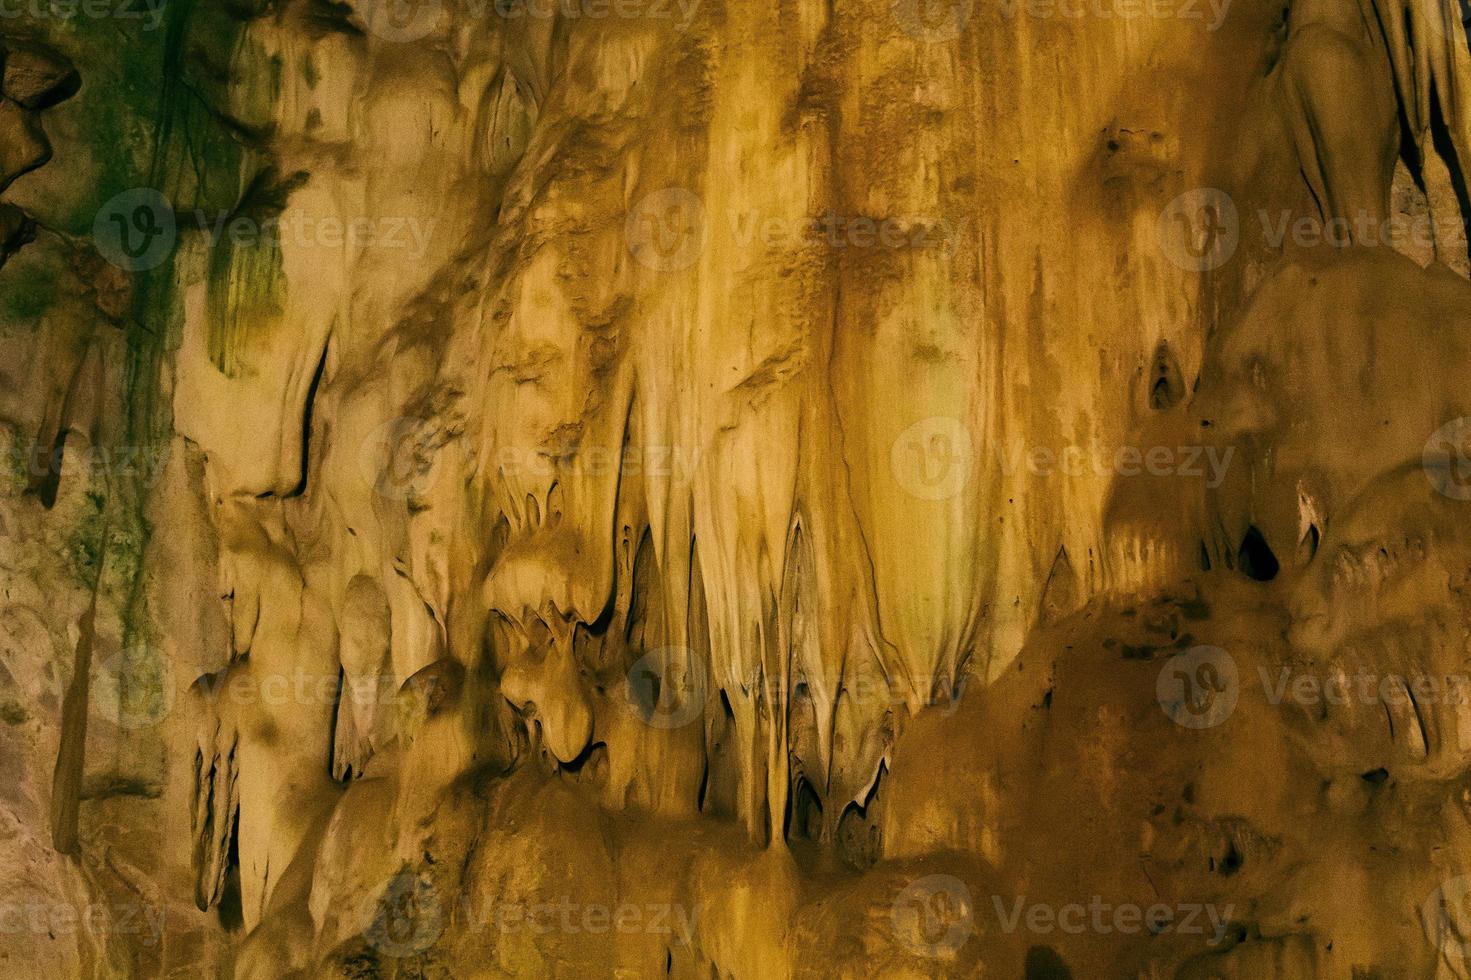 natürliche dunkle unterirdische Höhle mit seltsam geformten Stalaktiten. foto